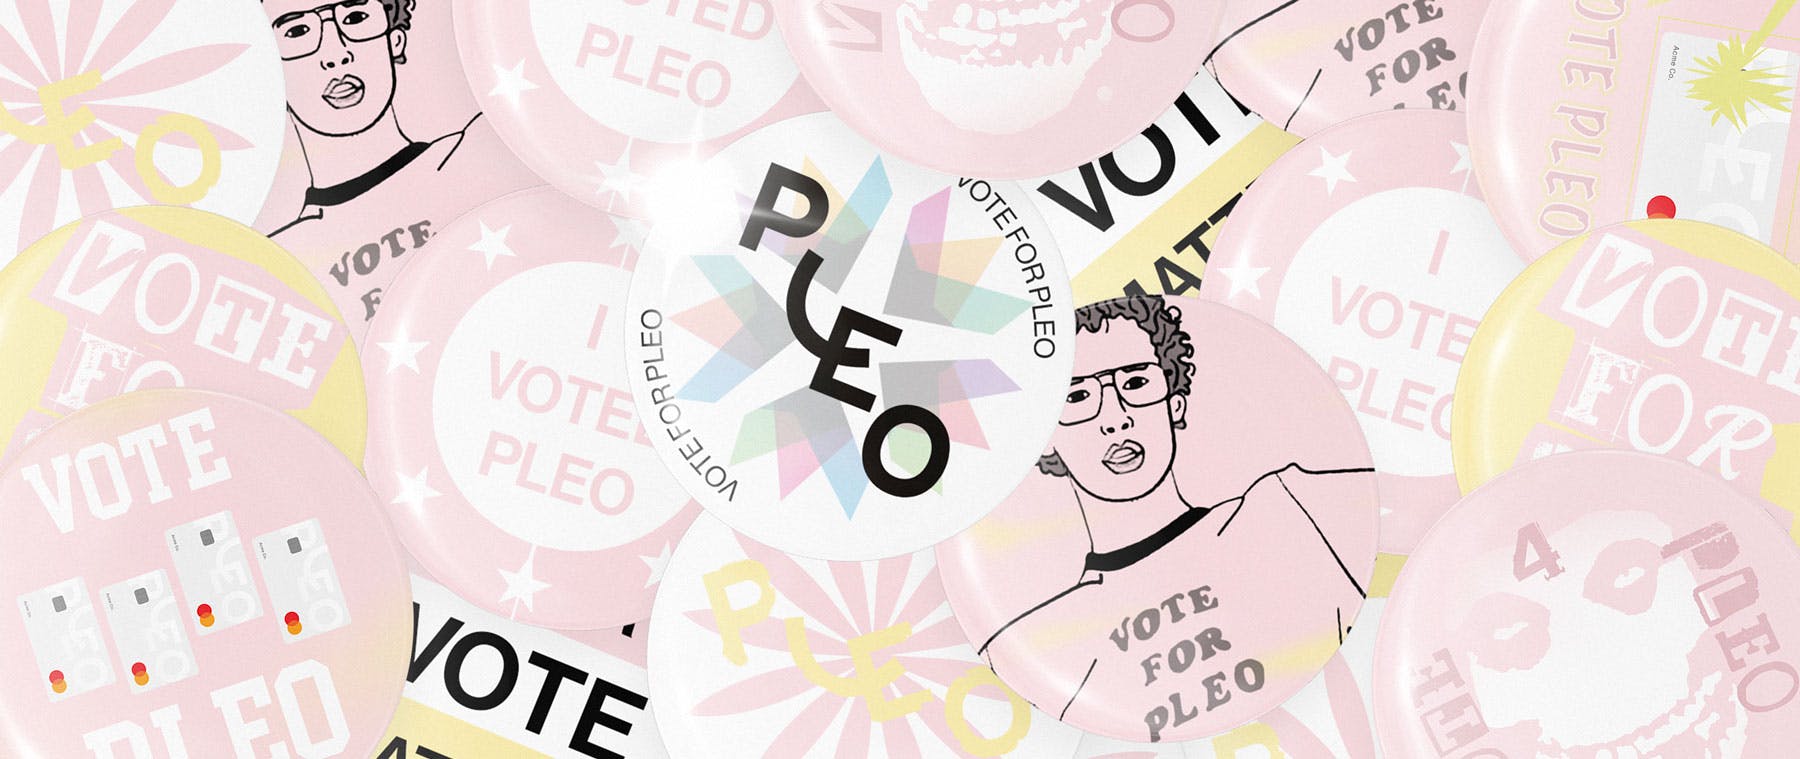 Stimmen Sie für Pleo